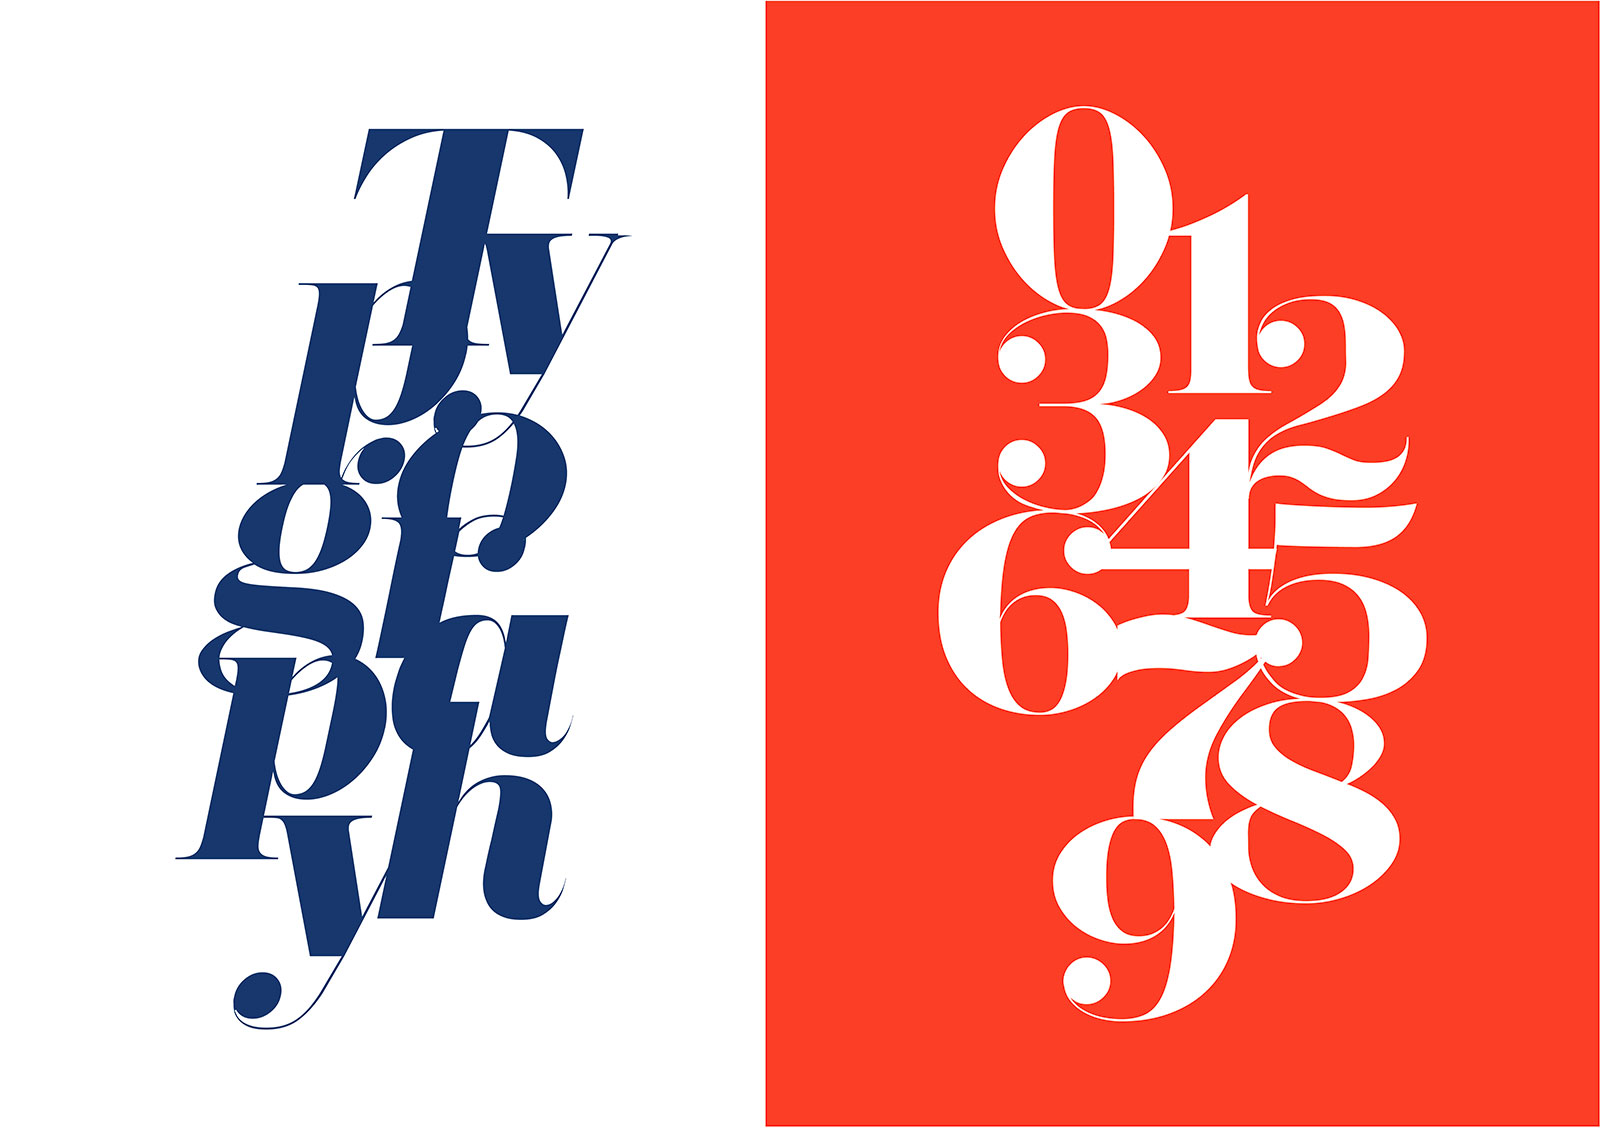 Herbert Typeface - Typography